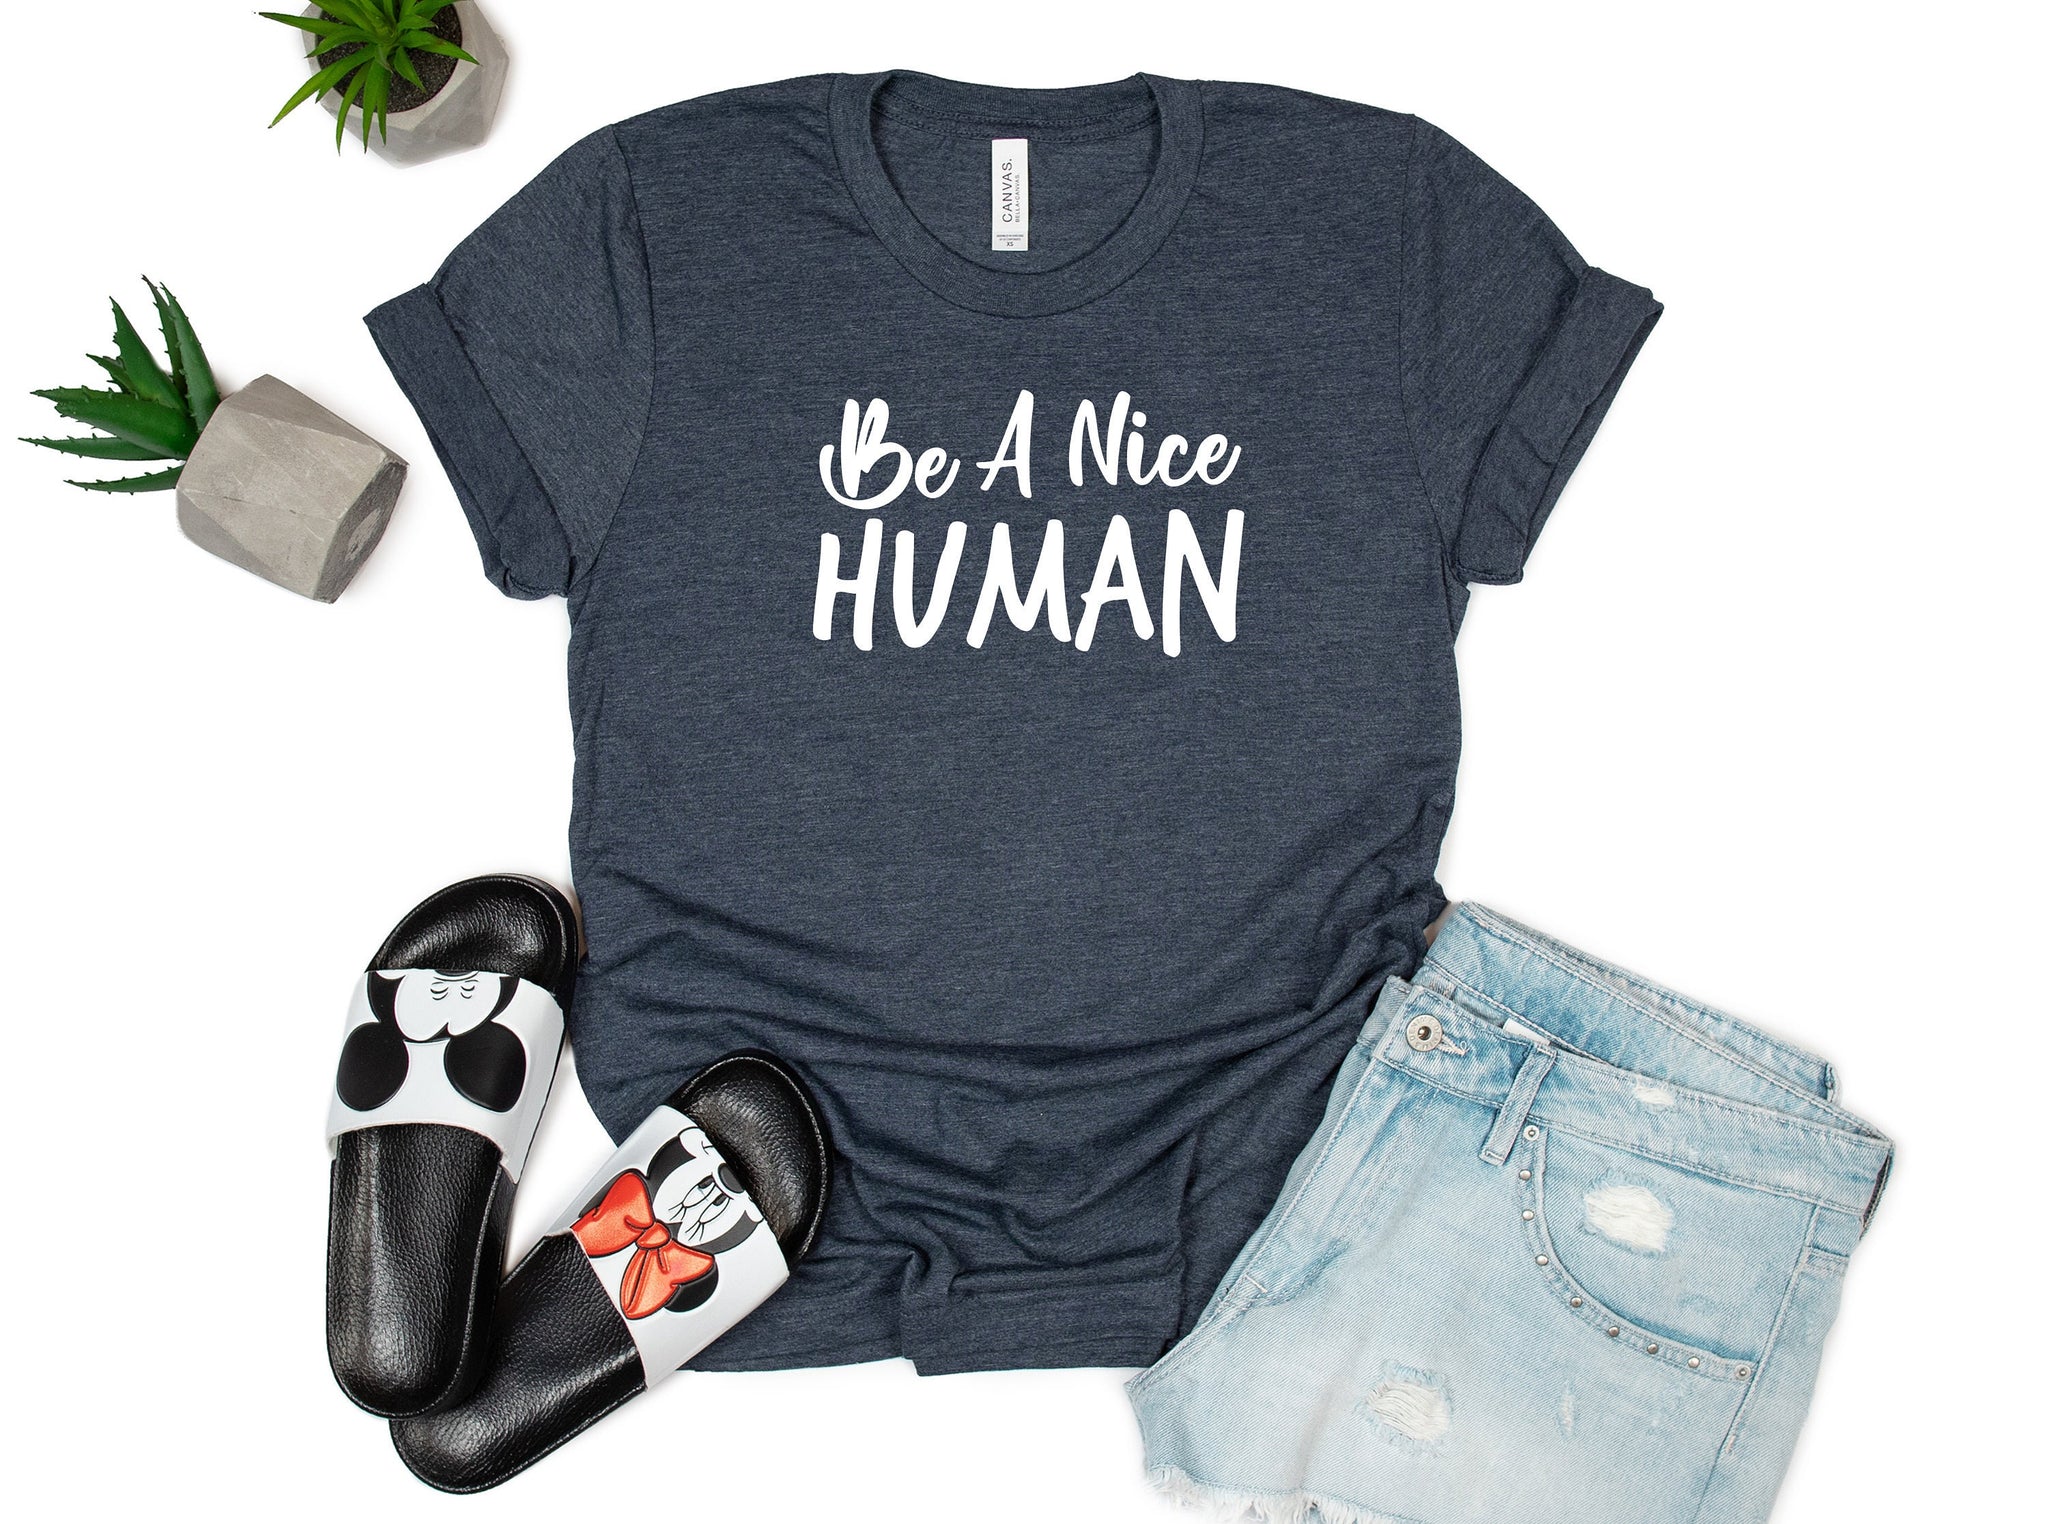 Be a Nice Human T shirt, Graphic Tee, Funny Women's Shirt, Brunch Shirts, Weekend Shirt, Boating Shirt, Workout Shirt, Comfy Tee, Retro Tee